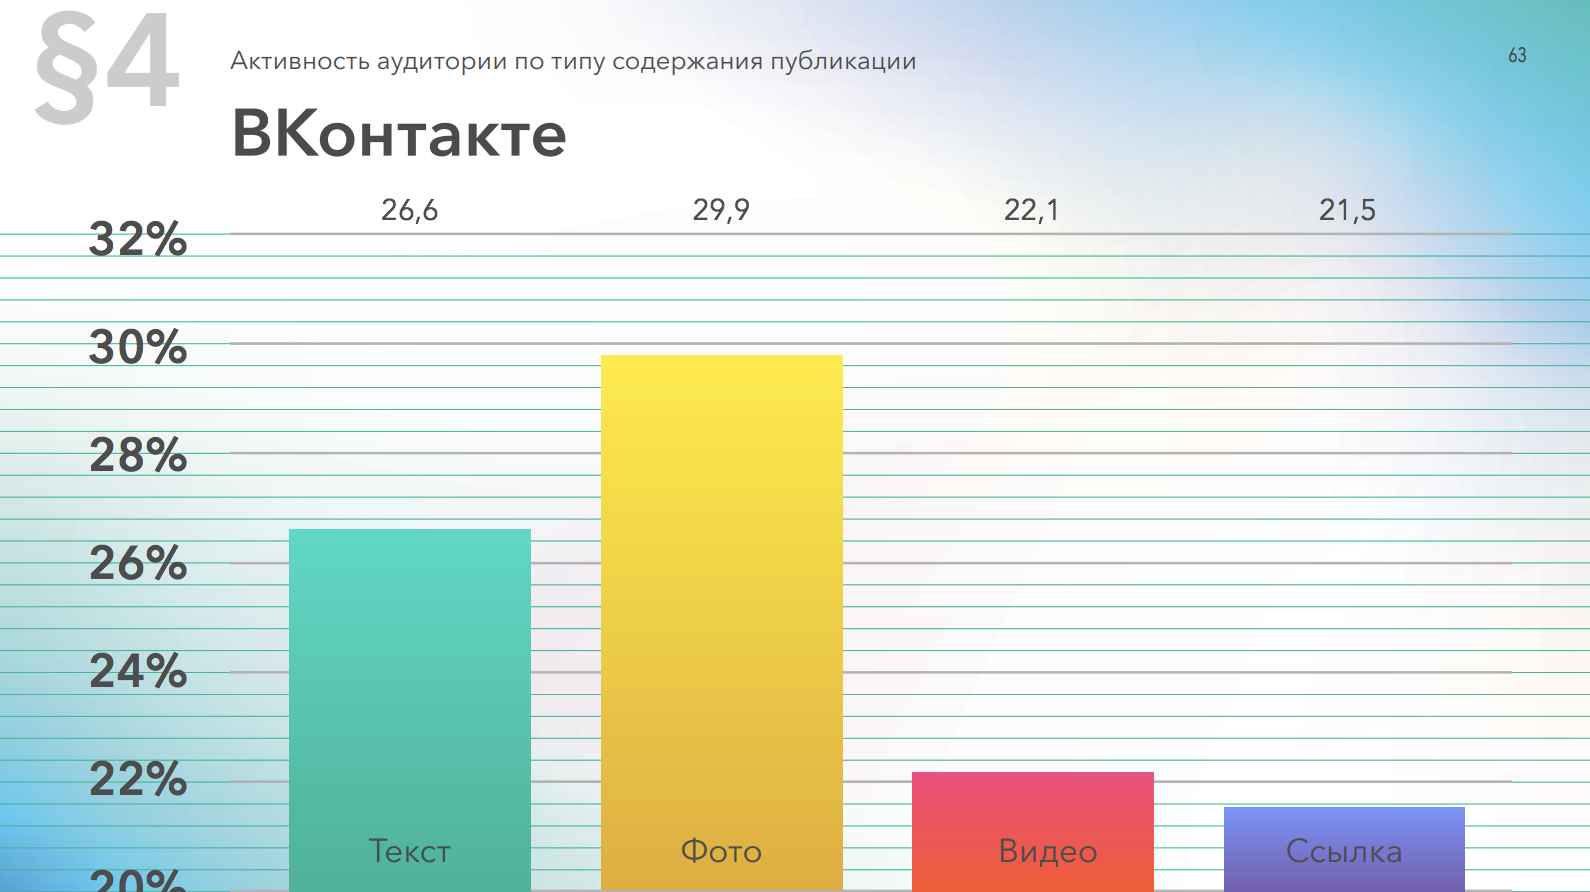 Активность аудитории Вконтакте в постах с разным типом контента, данные за 2019 год